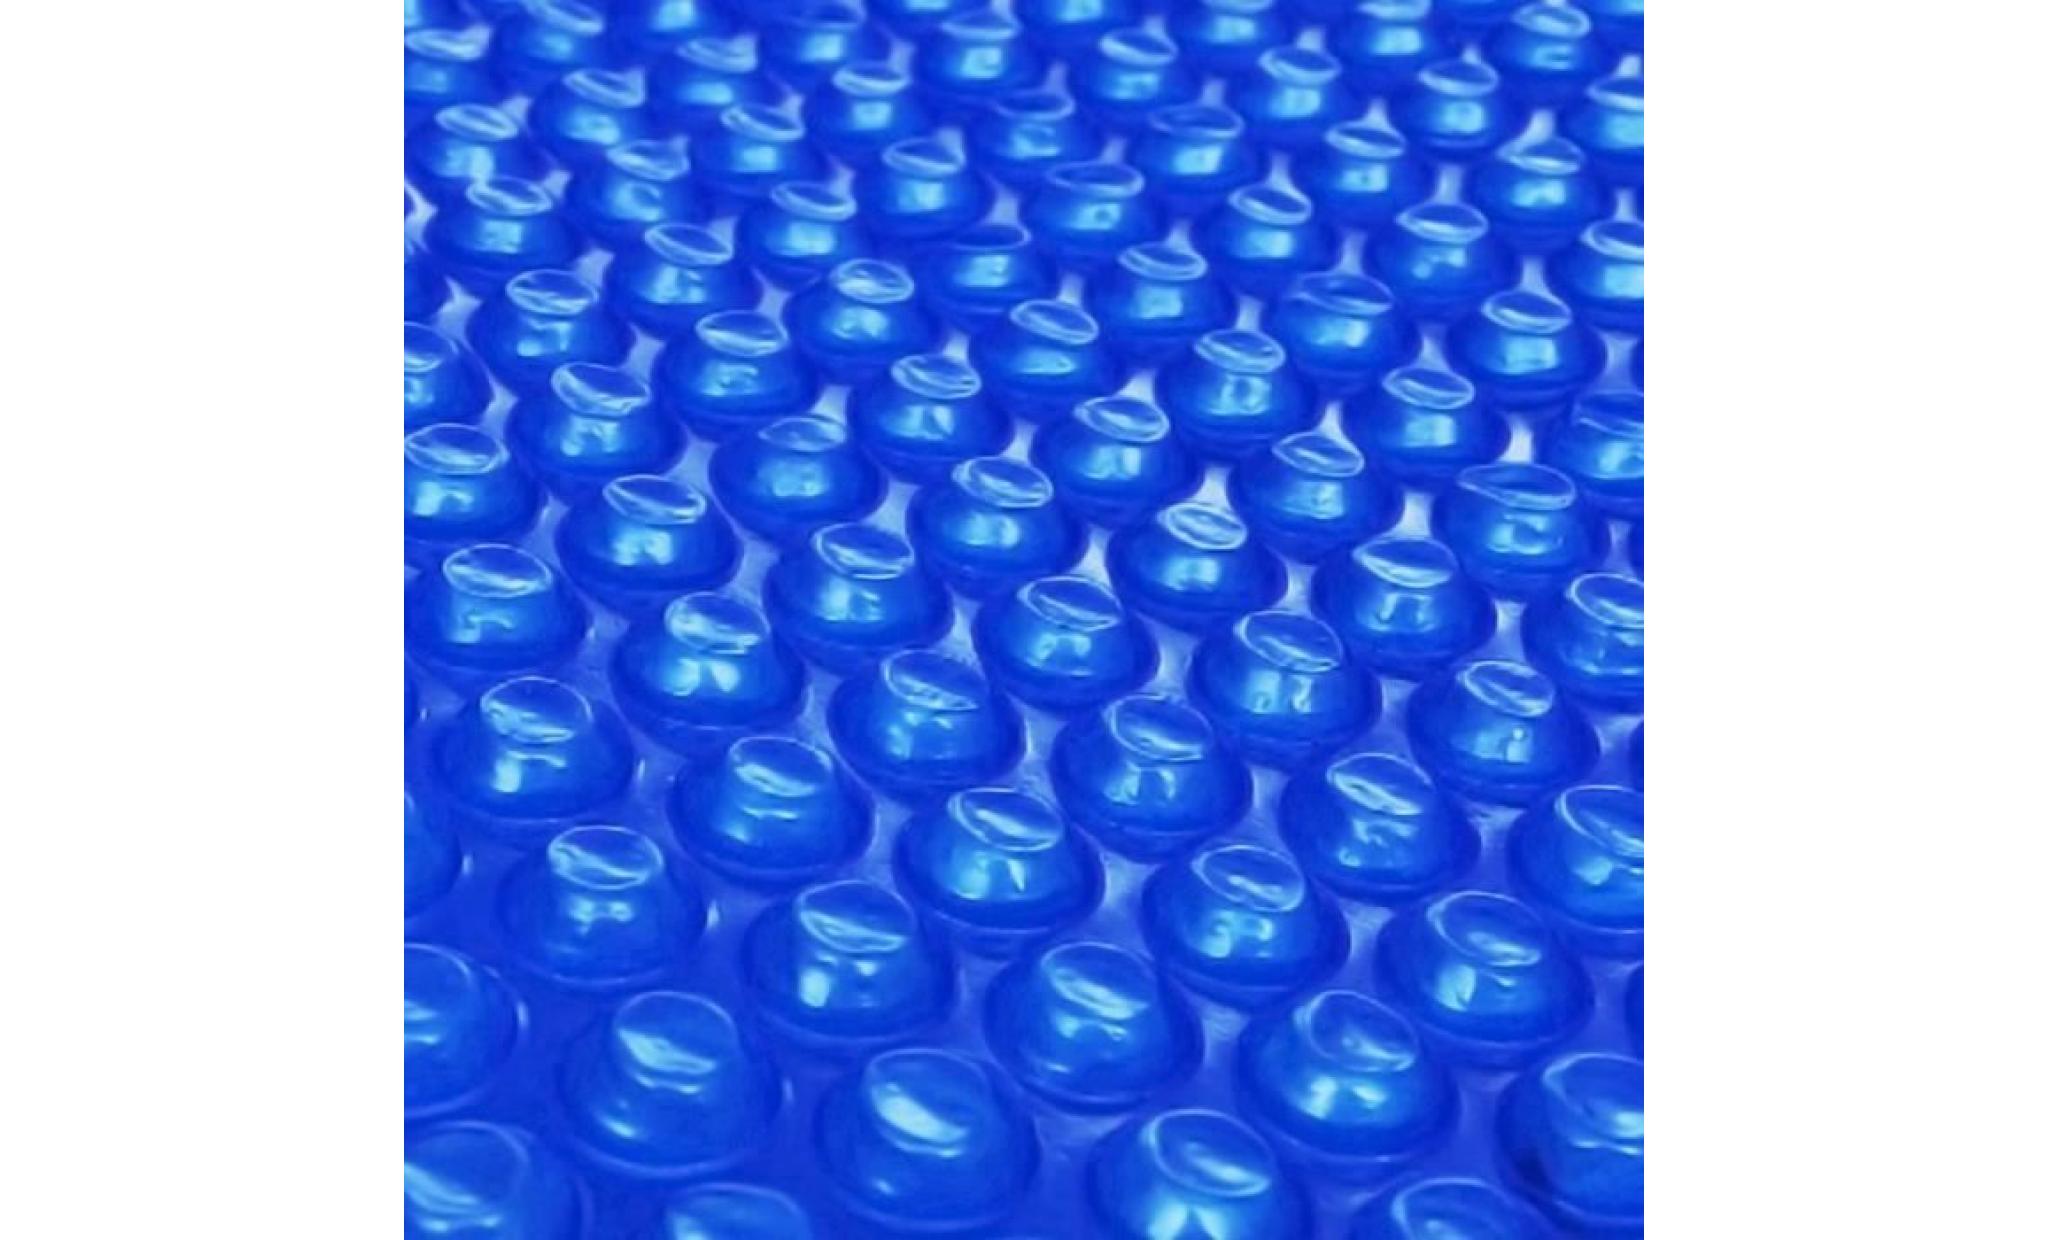 haute qualité magnifique economique  film solaire de piscine ronde pe 455 cm bleu